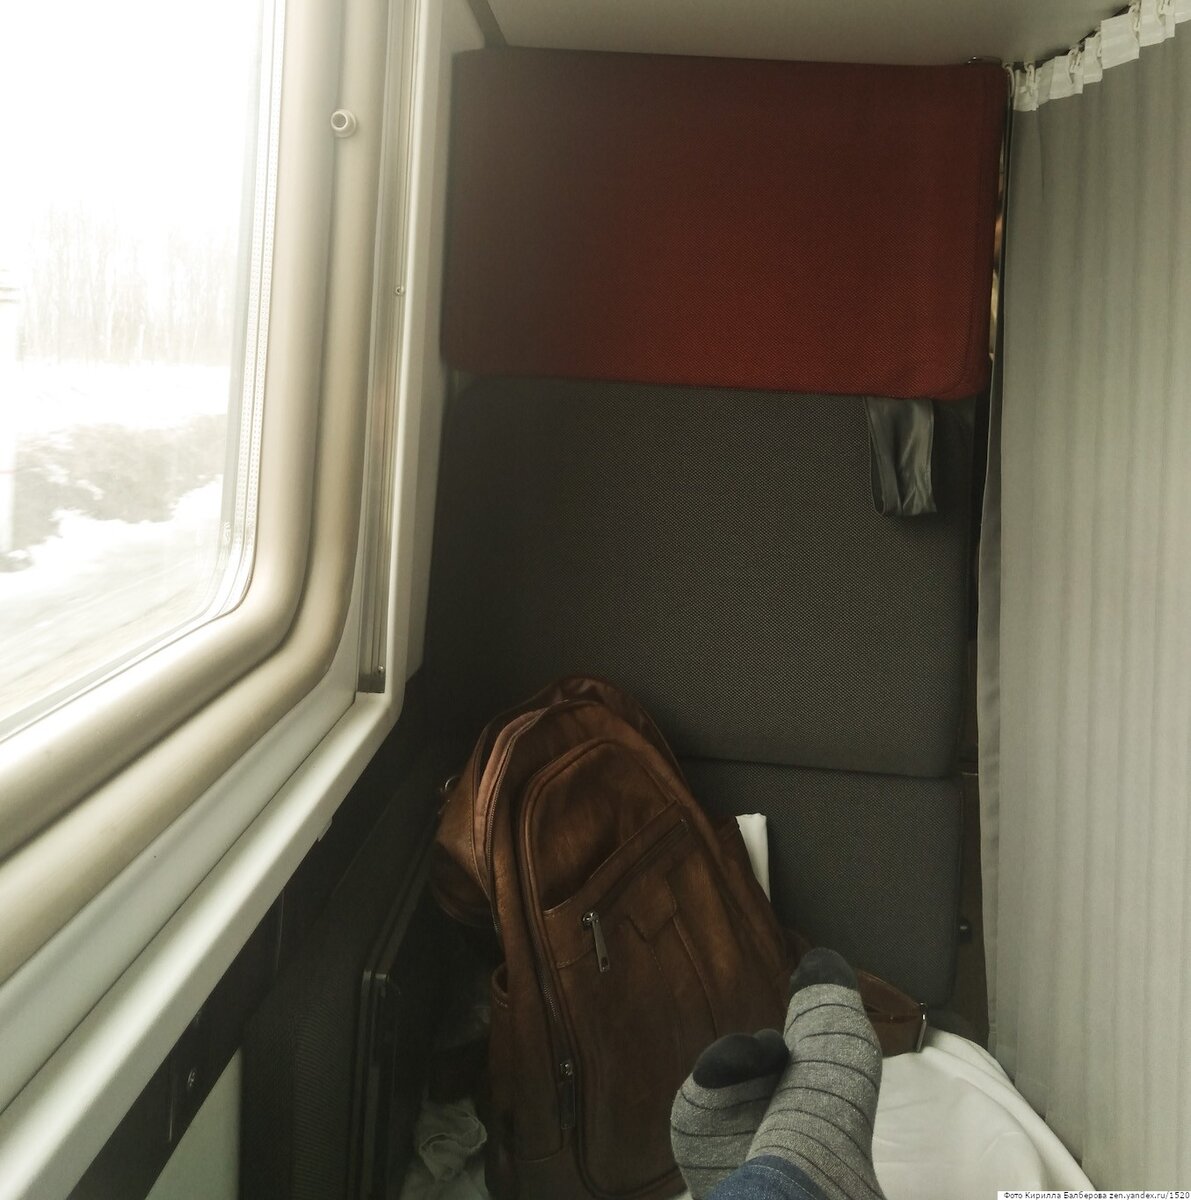 12 лайфхаков, которые сделают поездку в плацкартном вагоне комфортнее - Лайфхакер